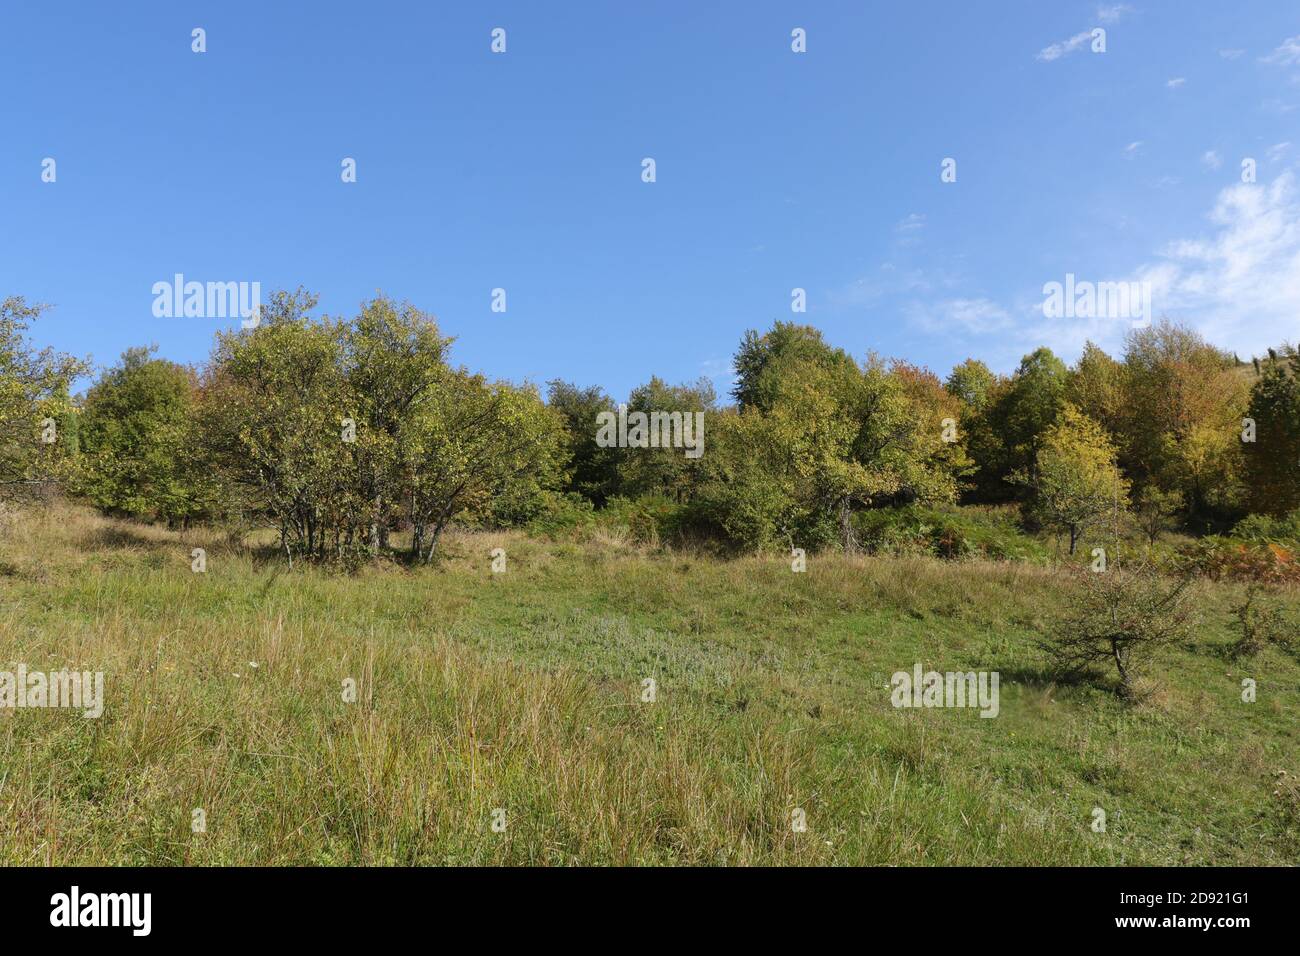 Verdi prati collinari all'inizio dell'autunno Foto Stock